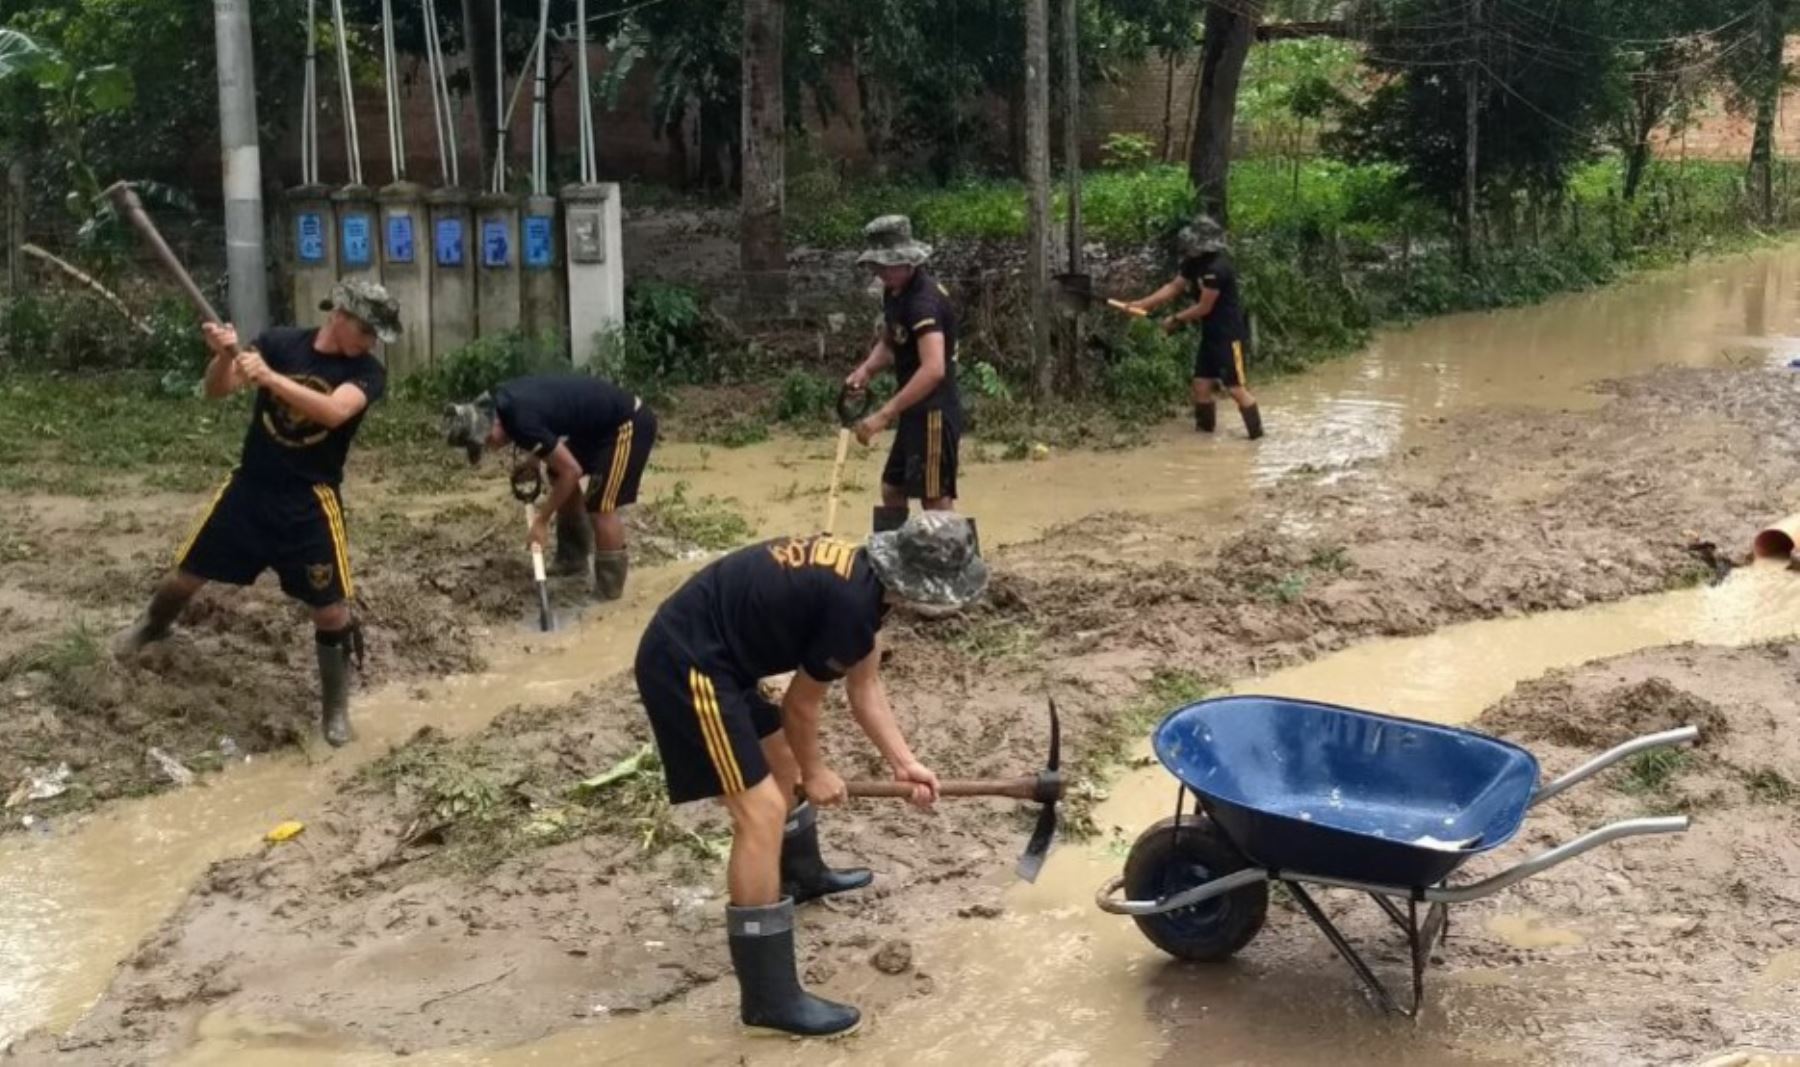 En su segundo día de intervención como elementos de primera respuesta, los soldados de la Tercera Brigada de Fuerzas Especiales del Ejército continúan colaborando con la descolmatación de drenajes, remoción y limpieza de escombros de viviendas, calles, carreteras y puentes afectados por las lluvias y desbordes del río Cumbaza, en la región San Martín.